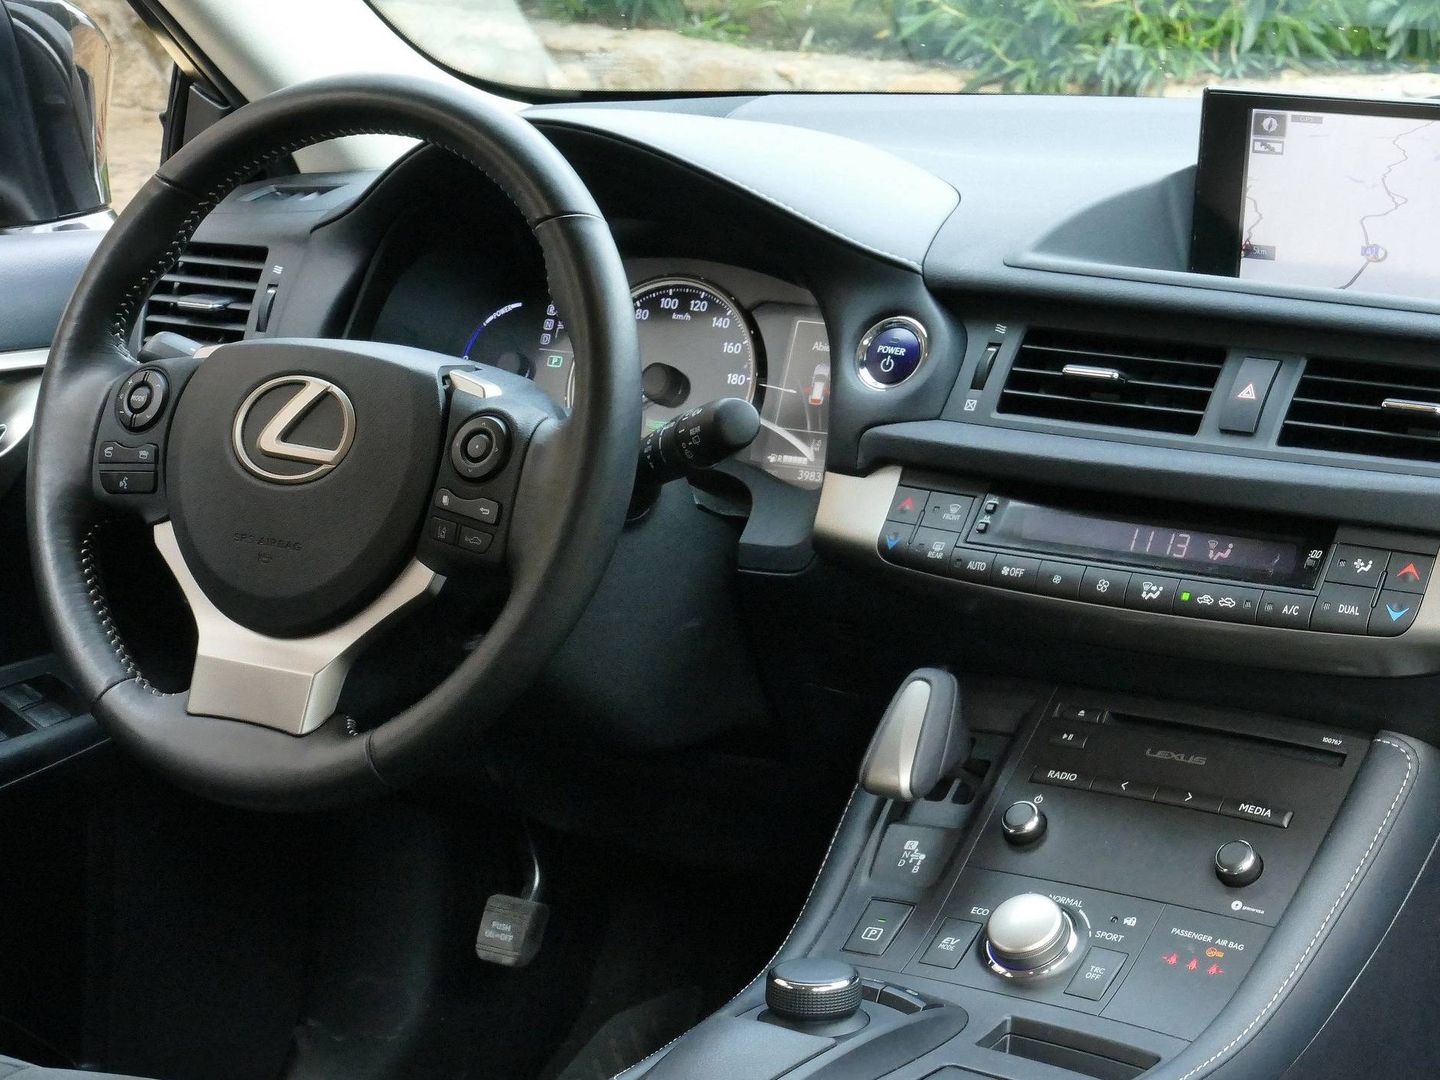 Pinche en la imagen para ver las mejores fotos del Lexus CT200h.